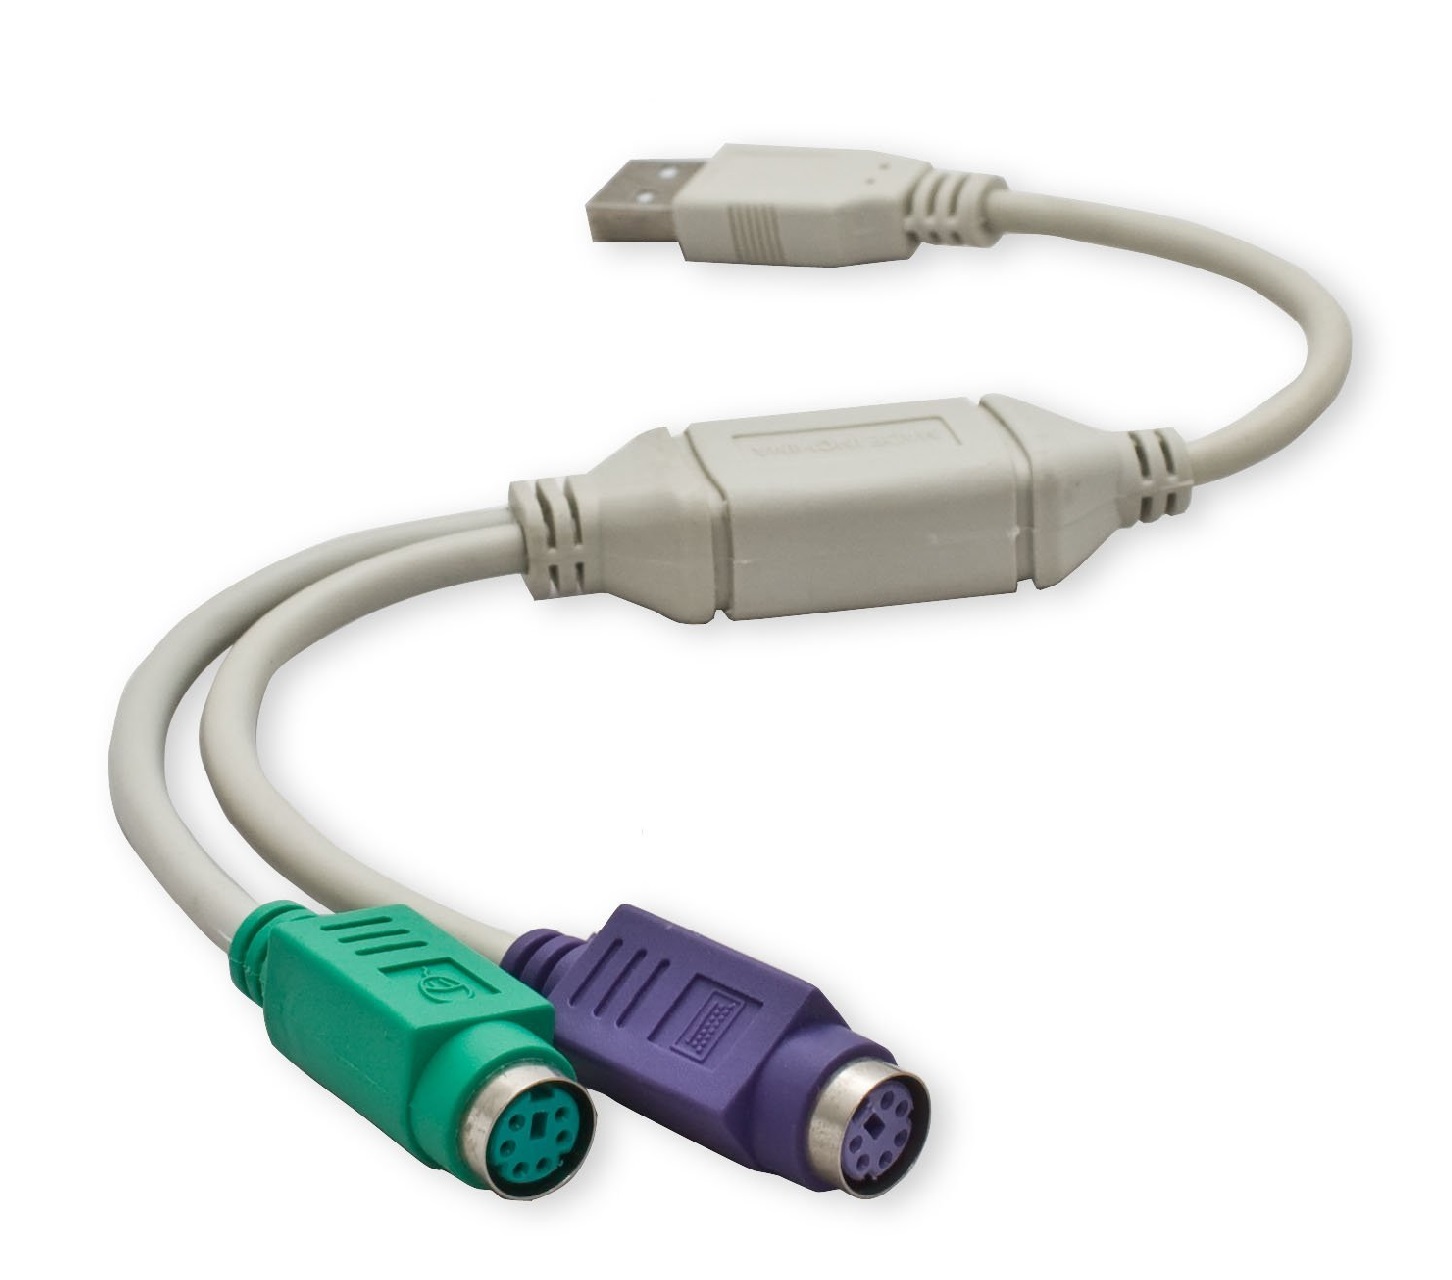  کابل تبدیل ps2 به USB به طول ۳۰ سانتی متر